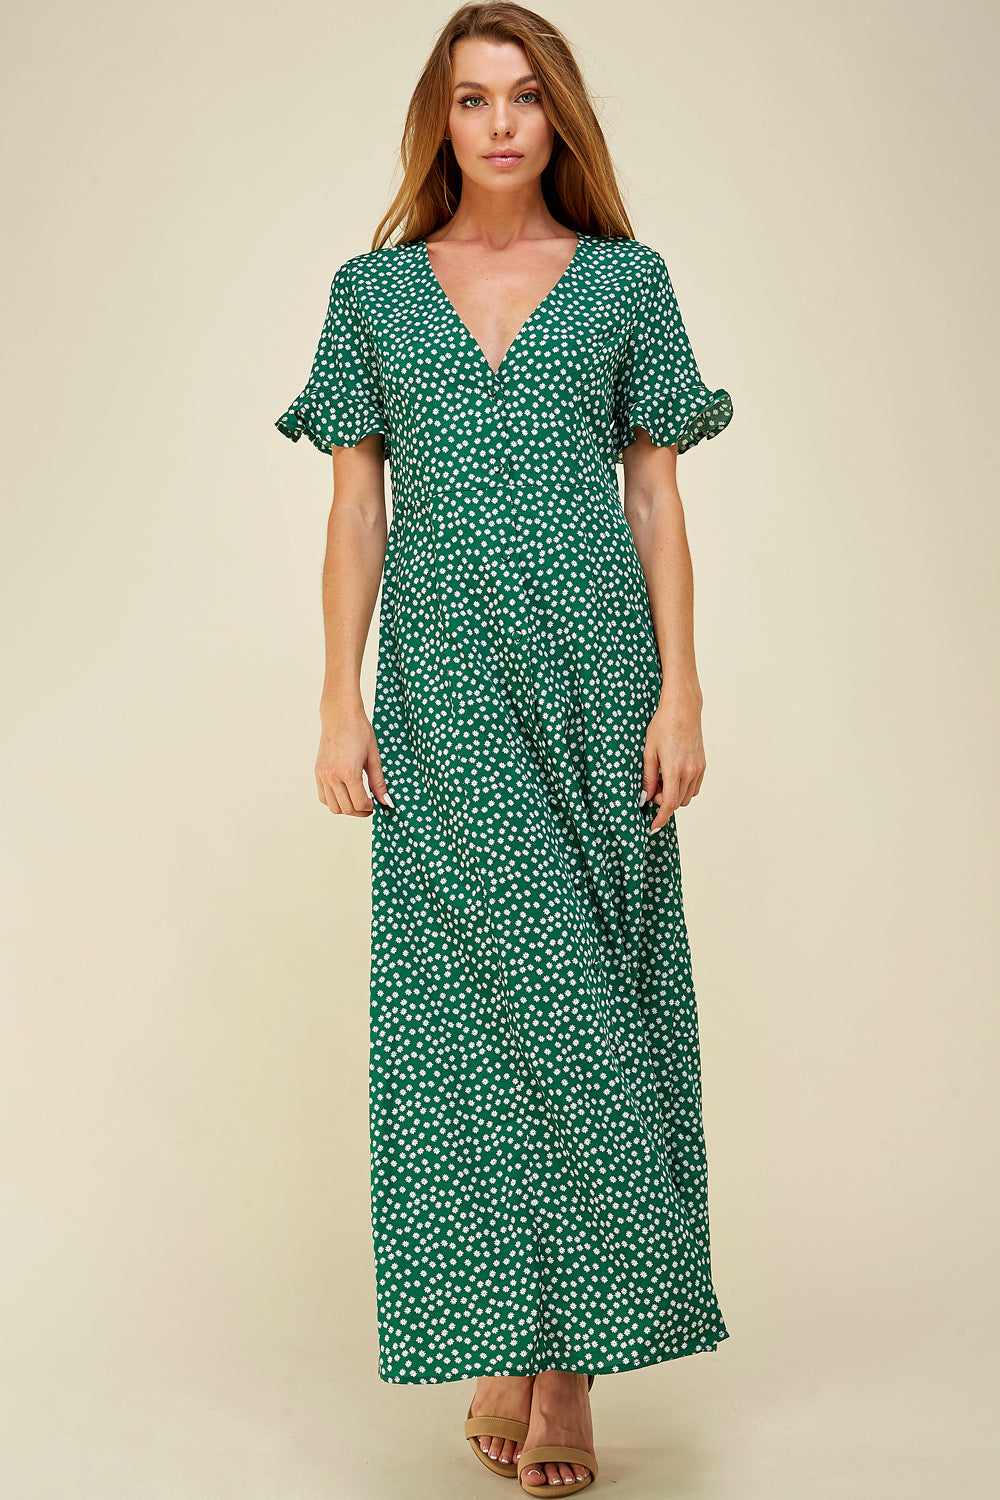 [$6/piece] Floral Short Ruffle Sleeve Dress